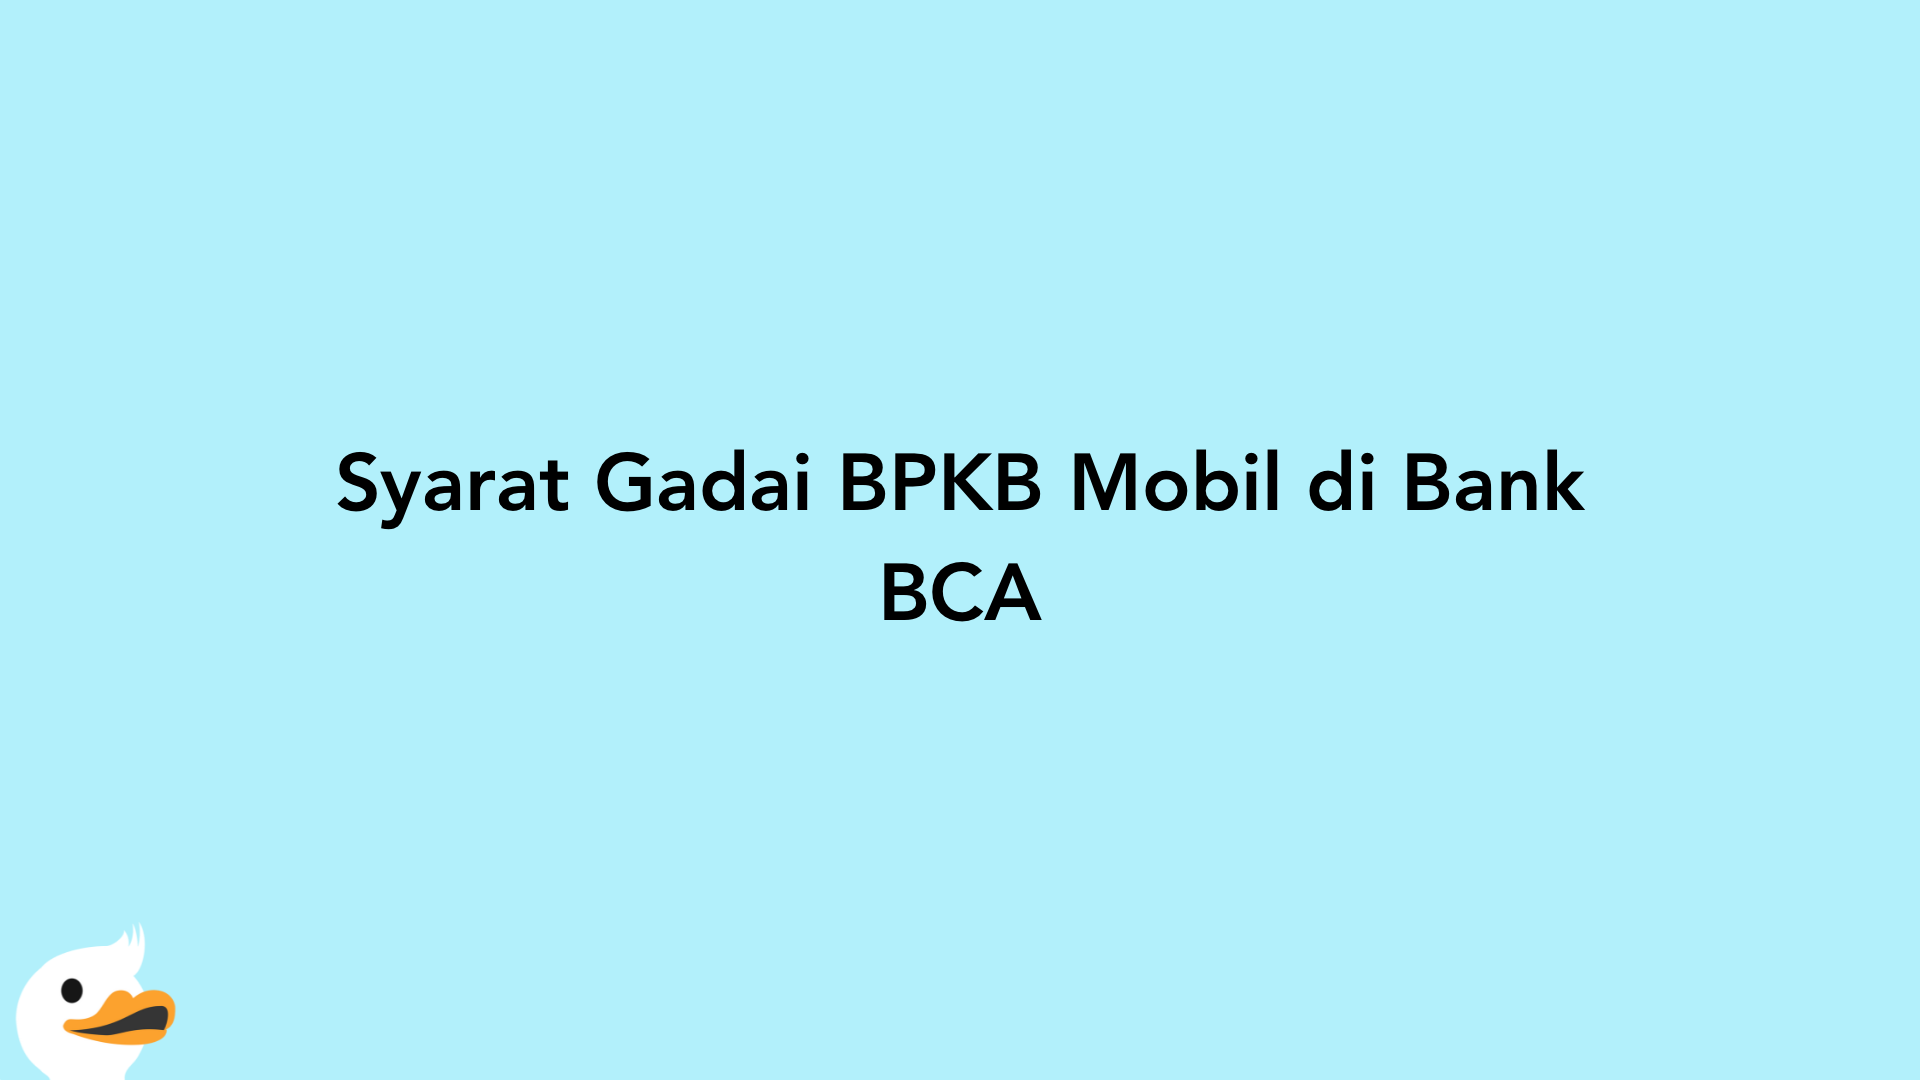 Syarat Gadai BPKB Mobil di Bank BCA